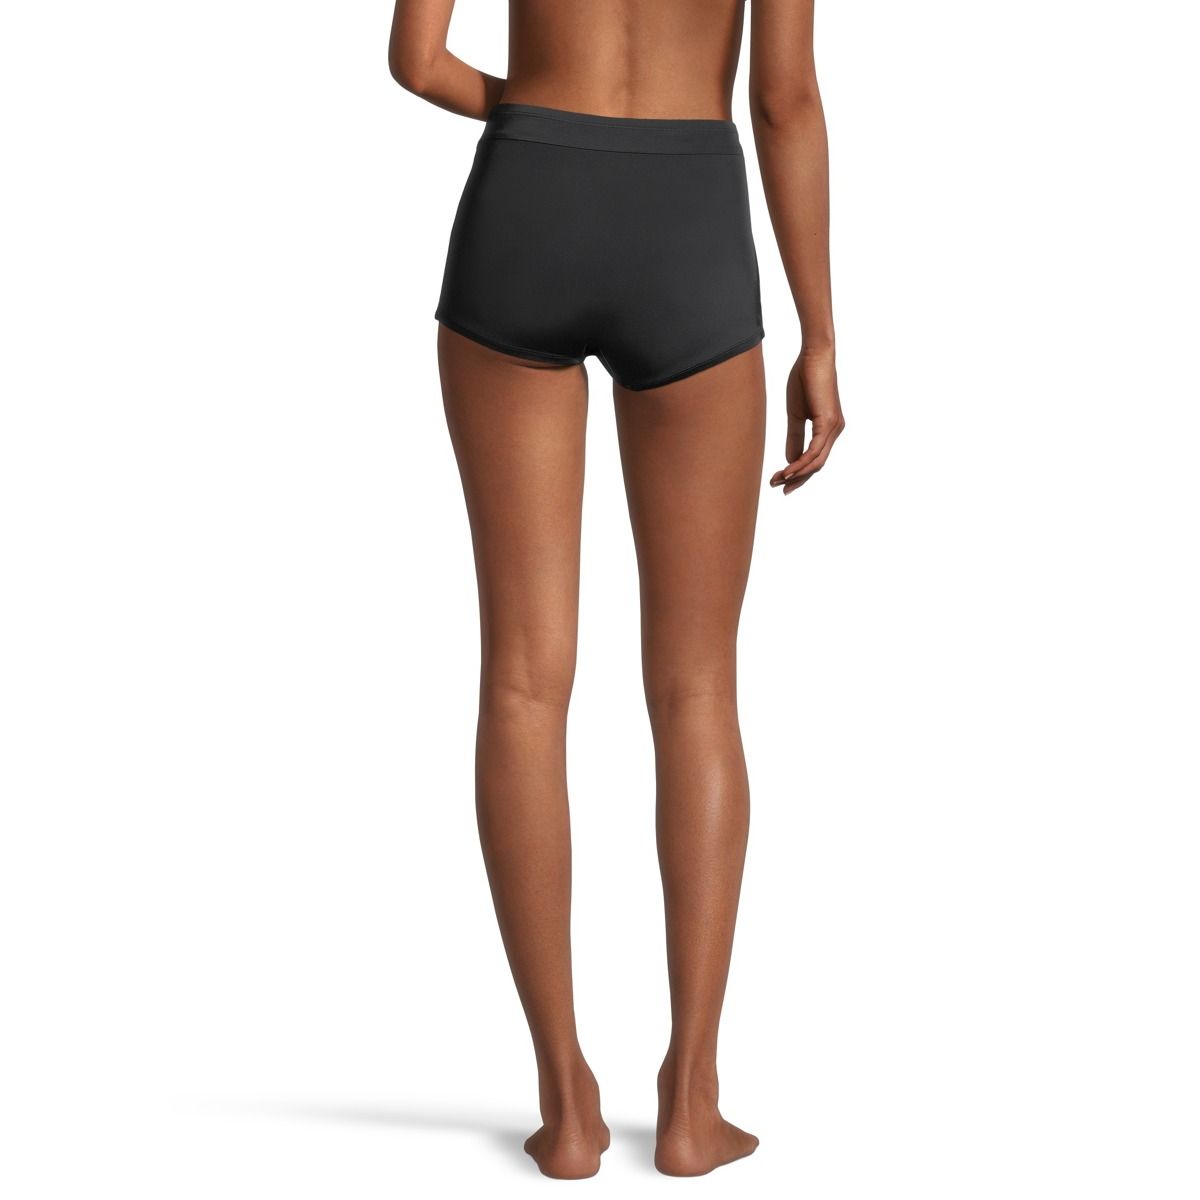 boy short bikini bottoms, boy short bikini bottoms Suppliers and  Manufacturers at